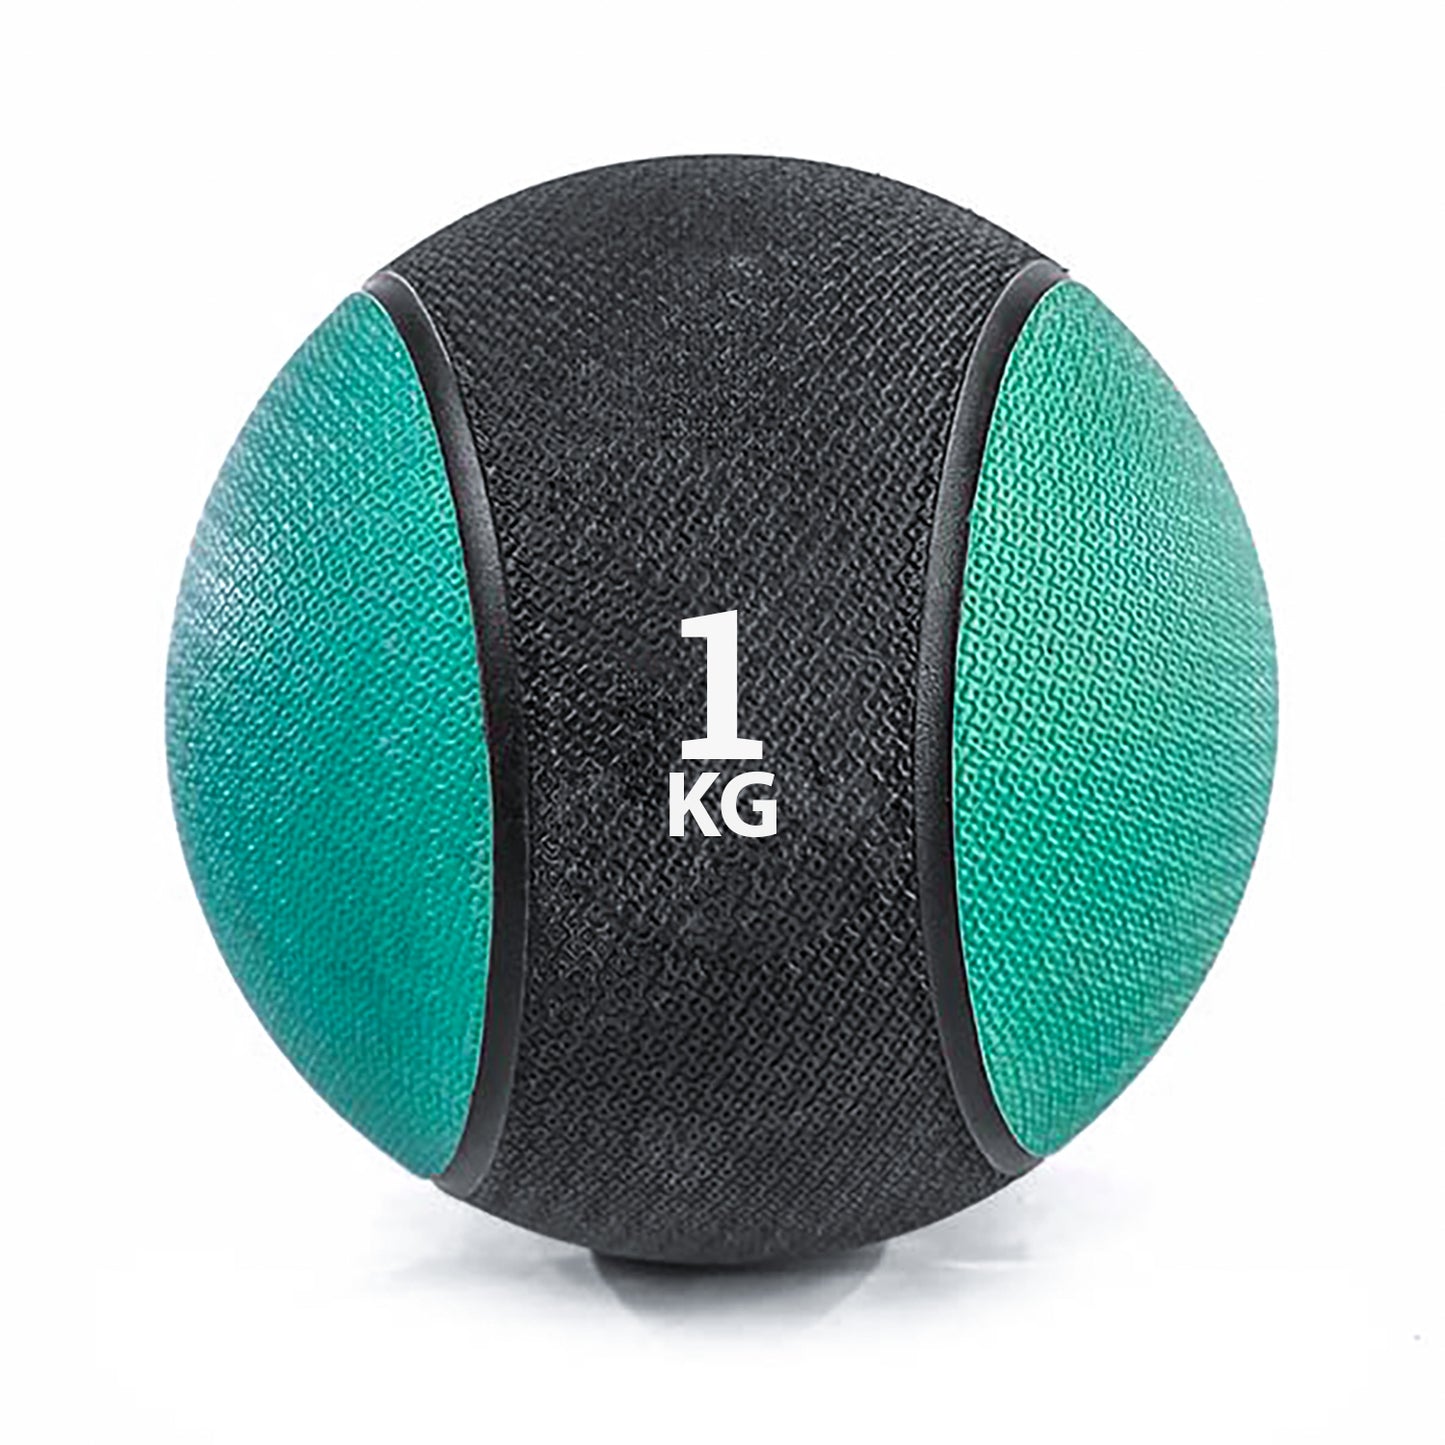 كرة طبية من المطاط لاعادة التأهيل و اللياقة البدنية - لون اسود و اخضر - وزن 1 كيلو جرام - Kanteen - كانتين